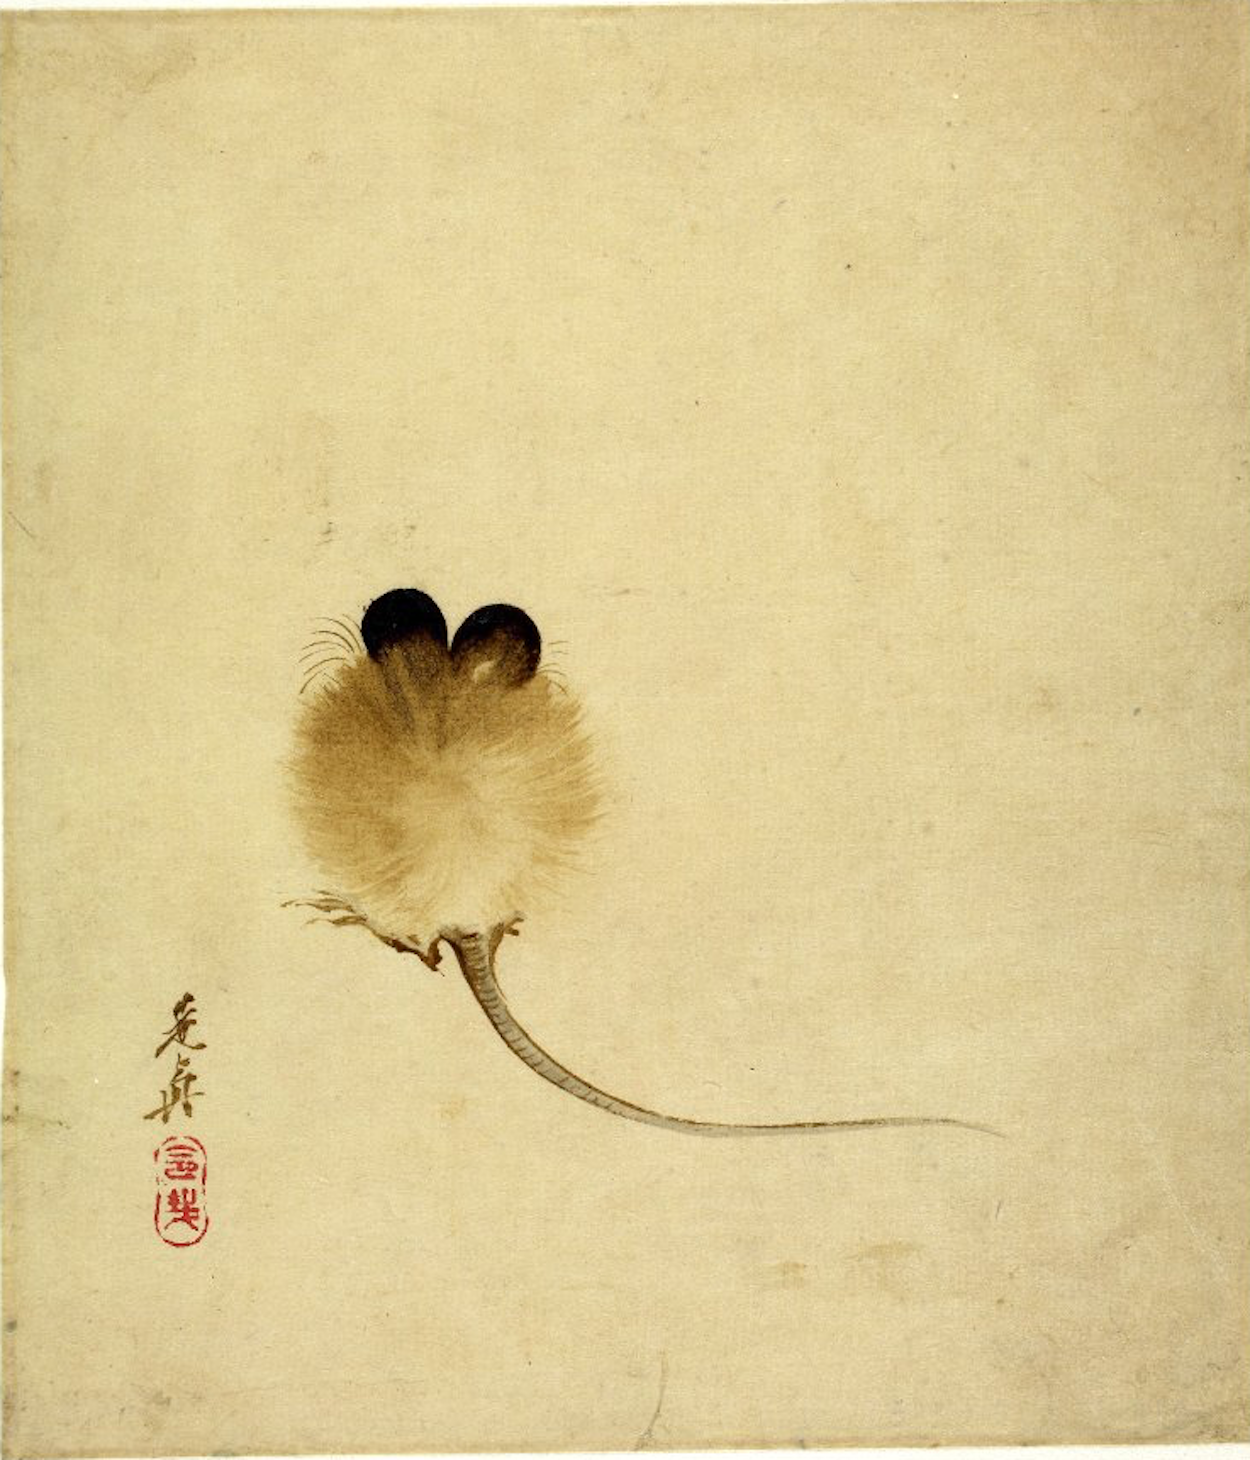 Muis by Shibata Zeshin - 19e eeuw - 19,4 x 16,8 cm 